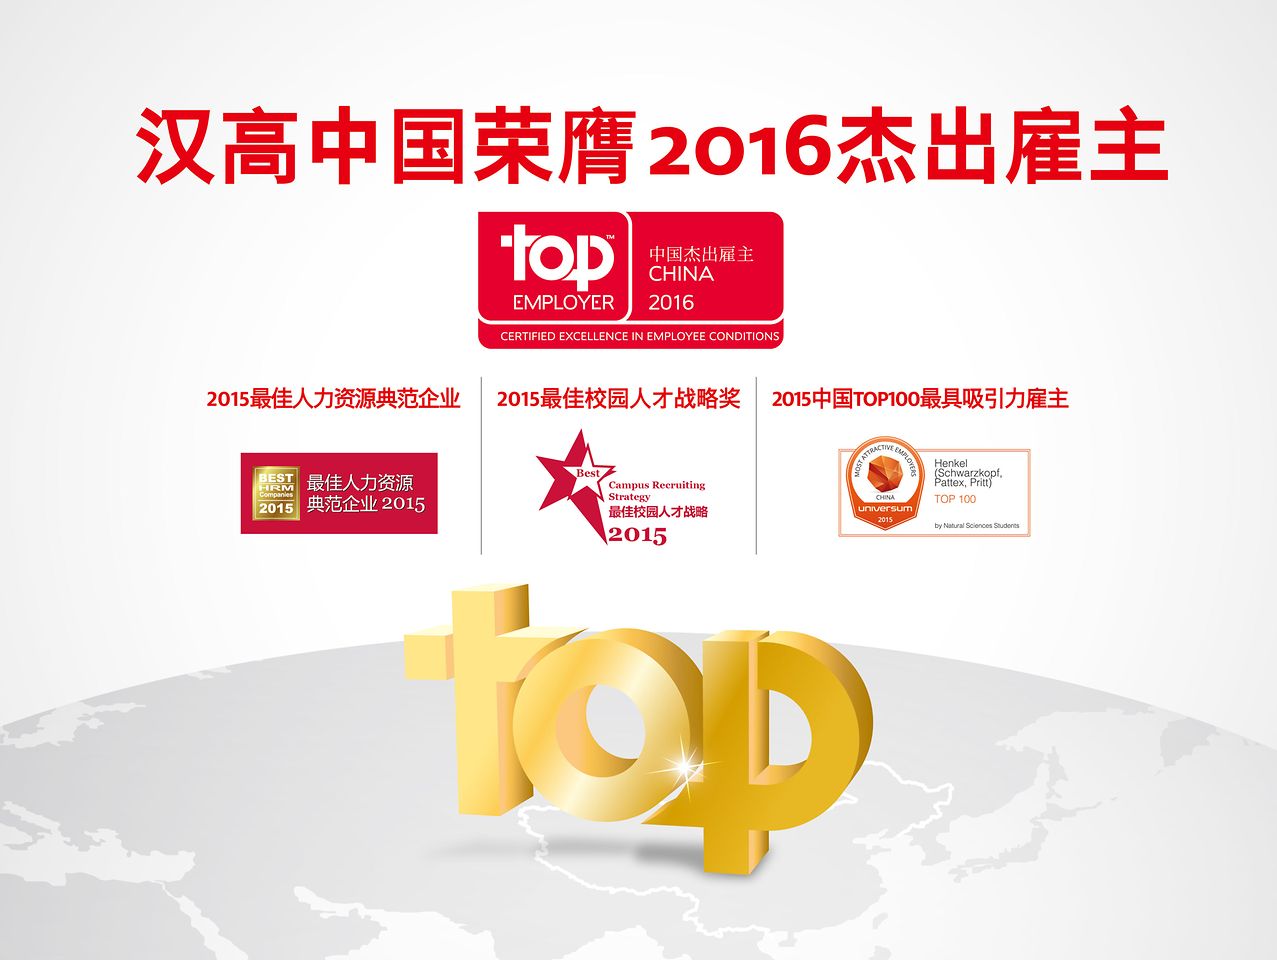 汉高中国荣膺“年度企业认证”之“2016中国杰出雇主”, “ 2015最佳人力资源典范”， “ 2015最佳校园人才战略奖” 和“ 2015 中国Top100最具吸引力雇主”四大奖项